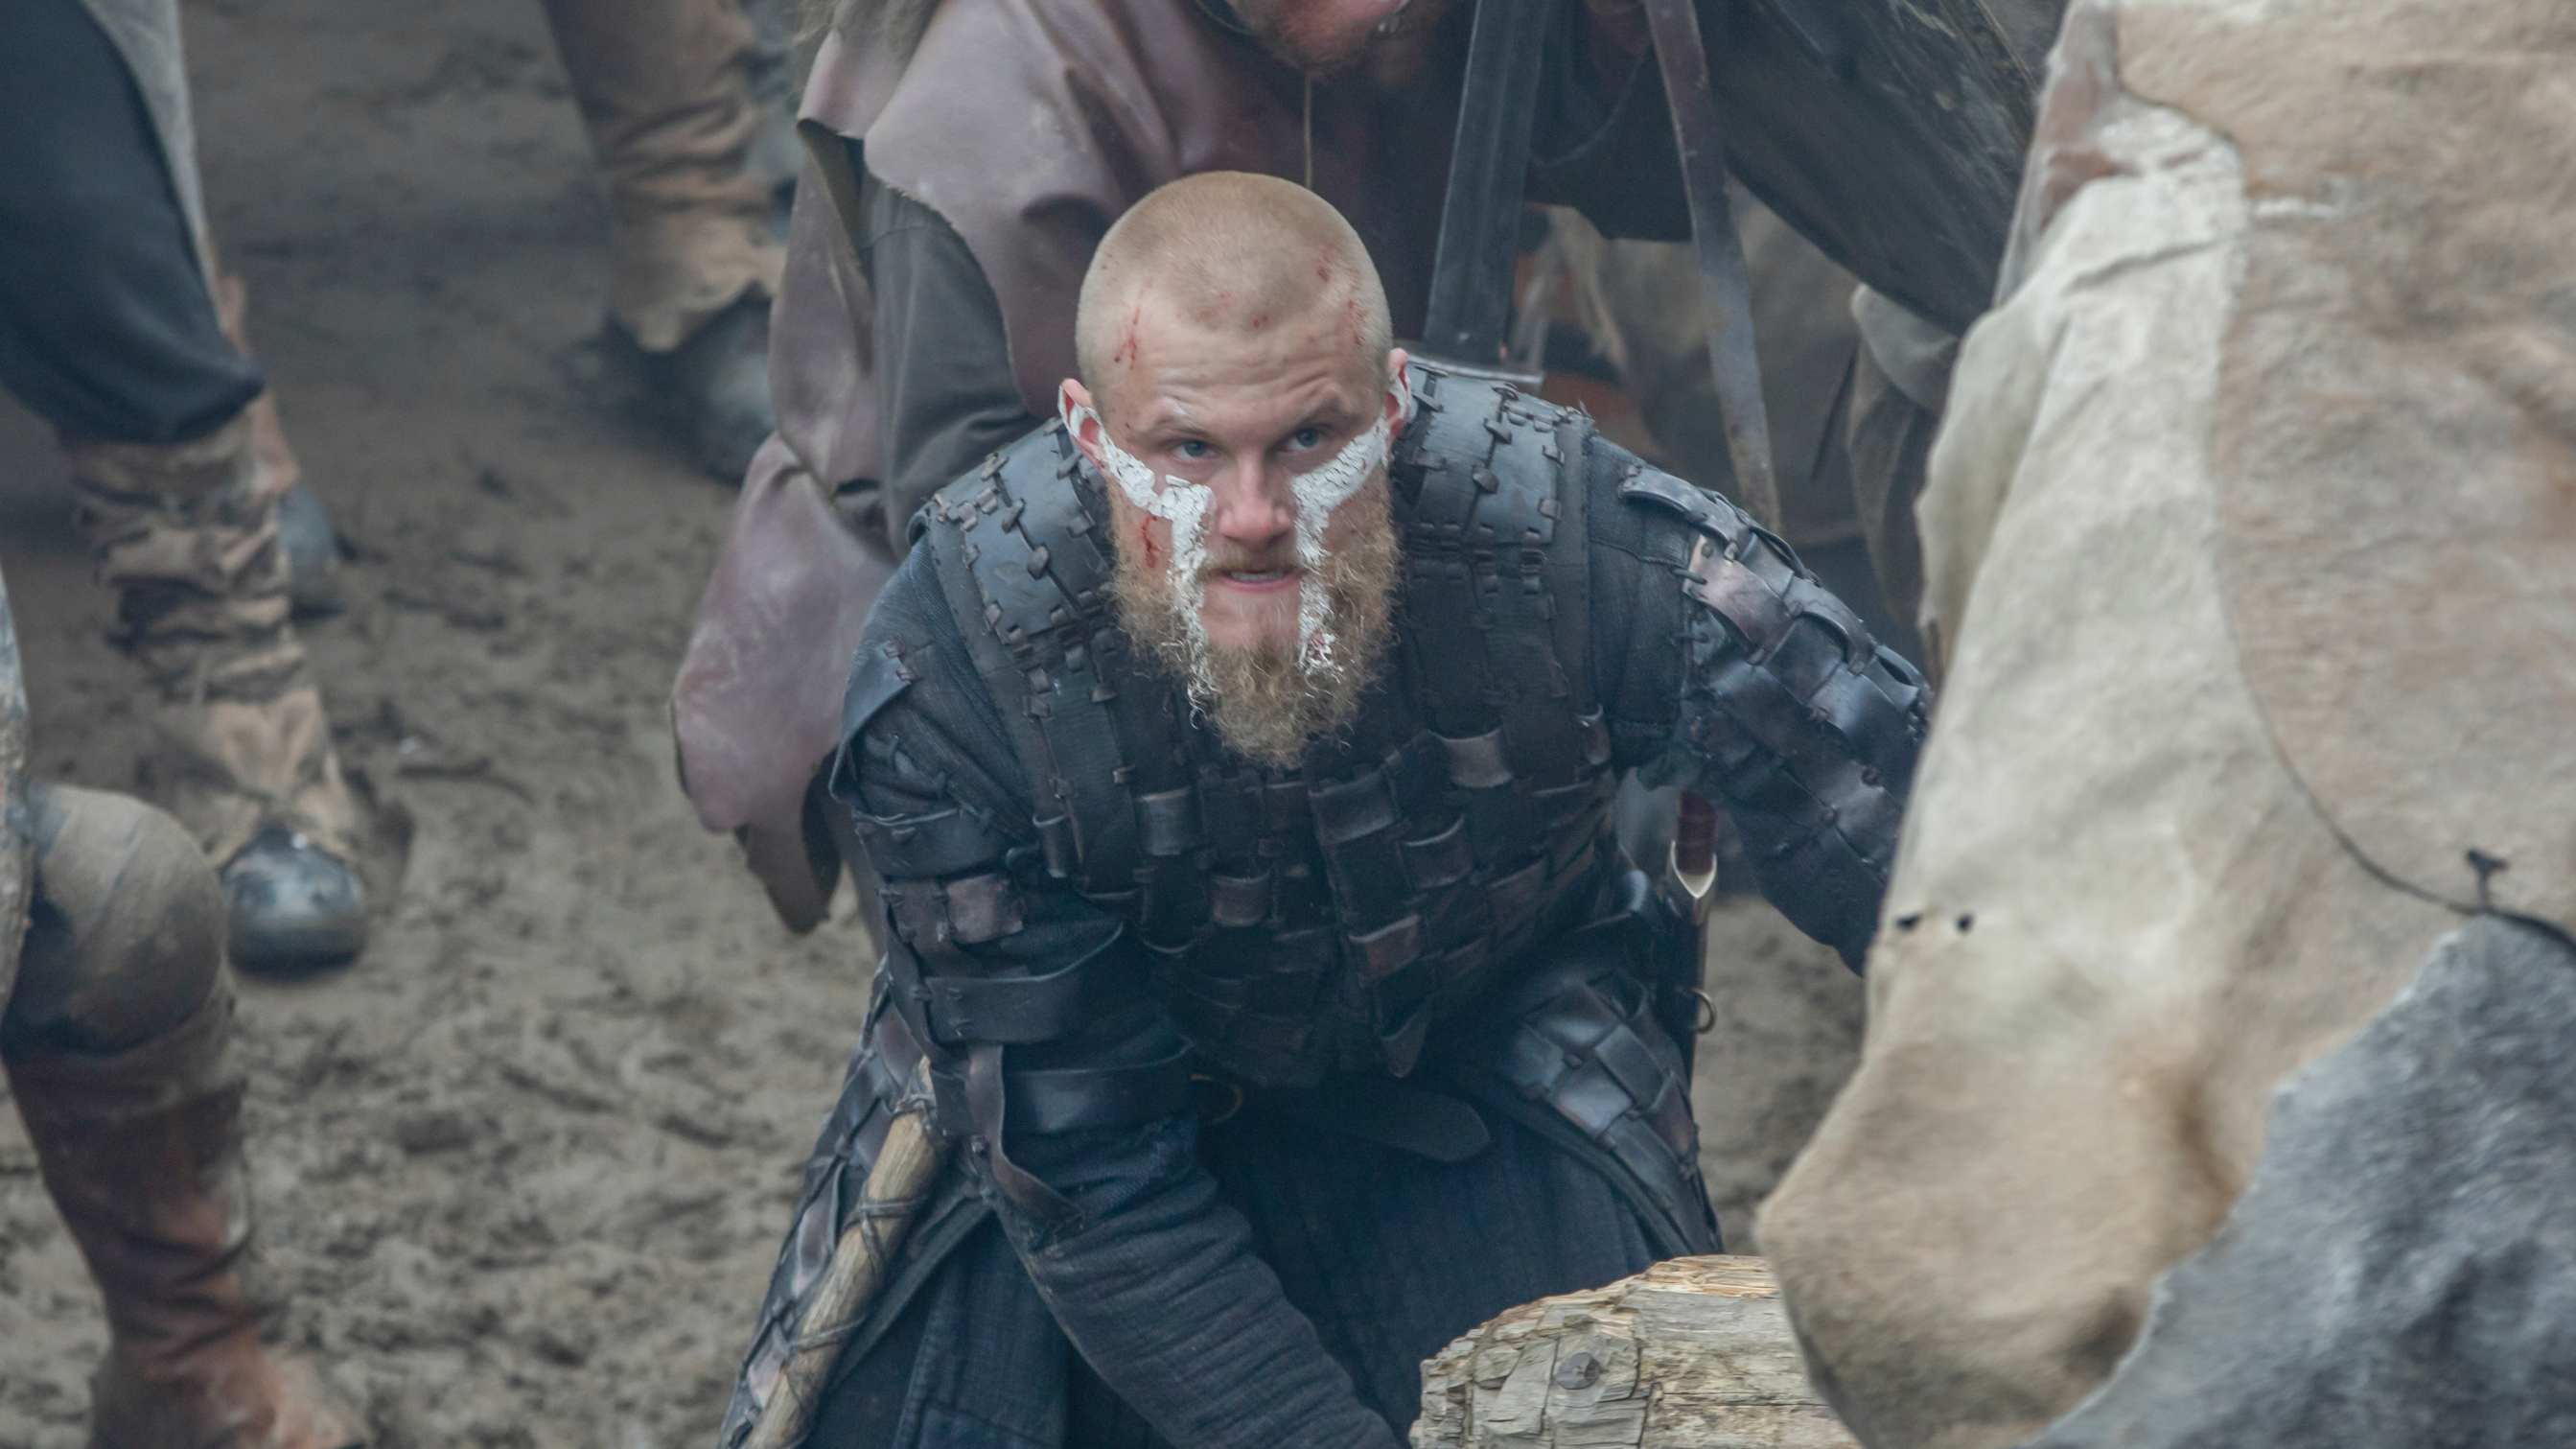 Vikings season 6: Will Ivar the Boneless die in the final series